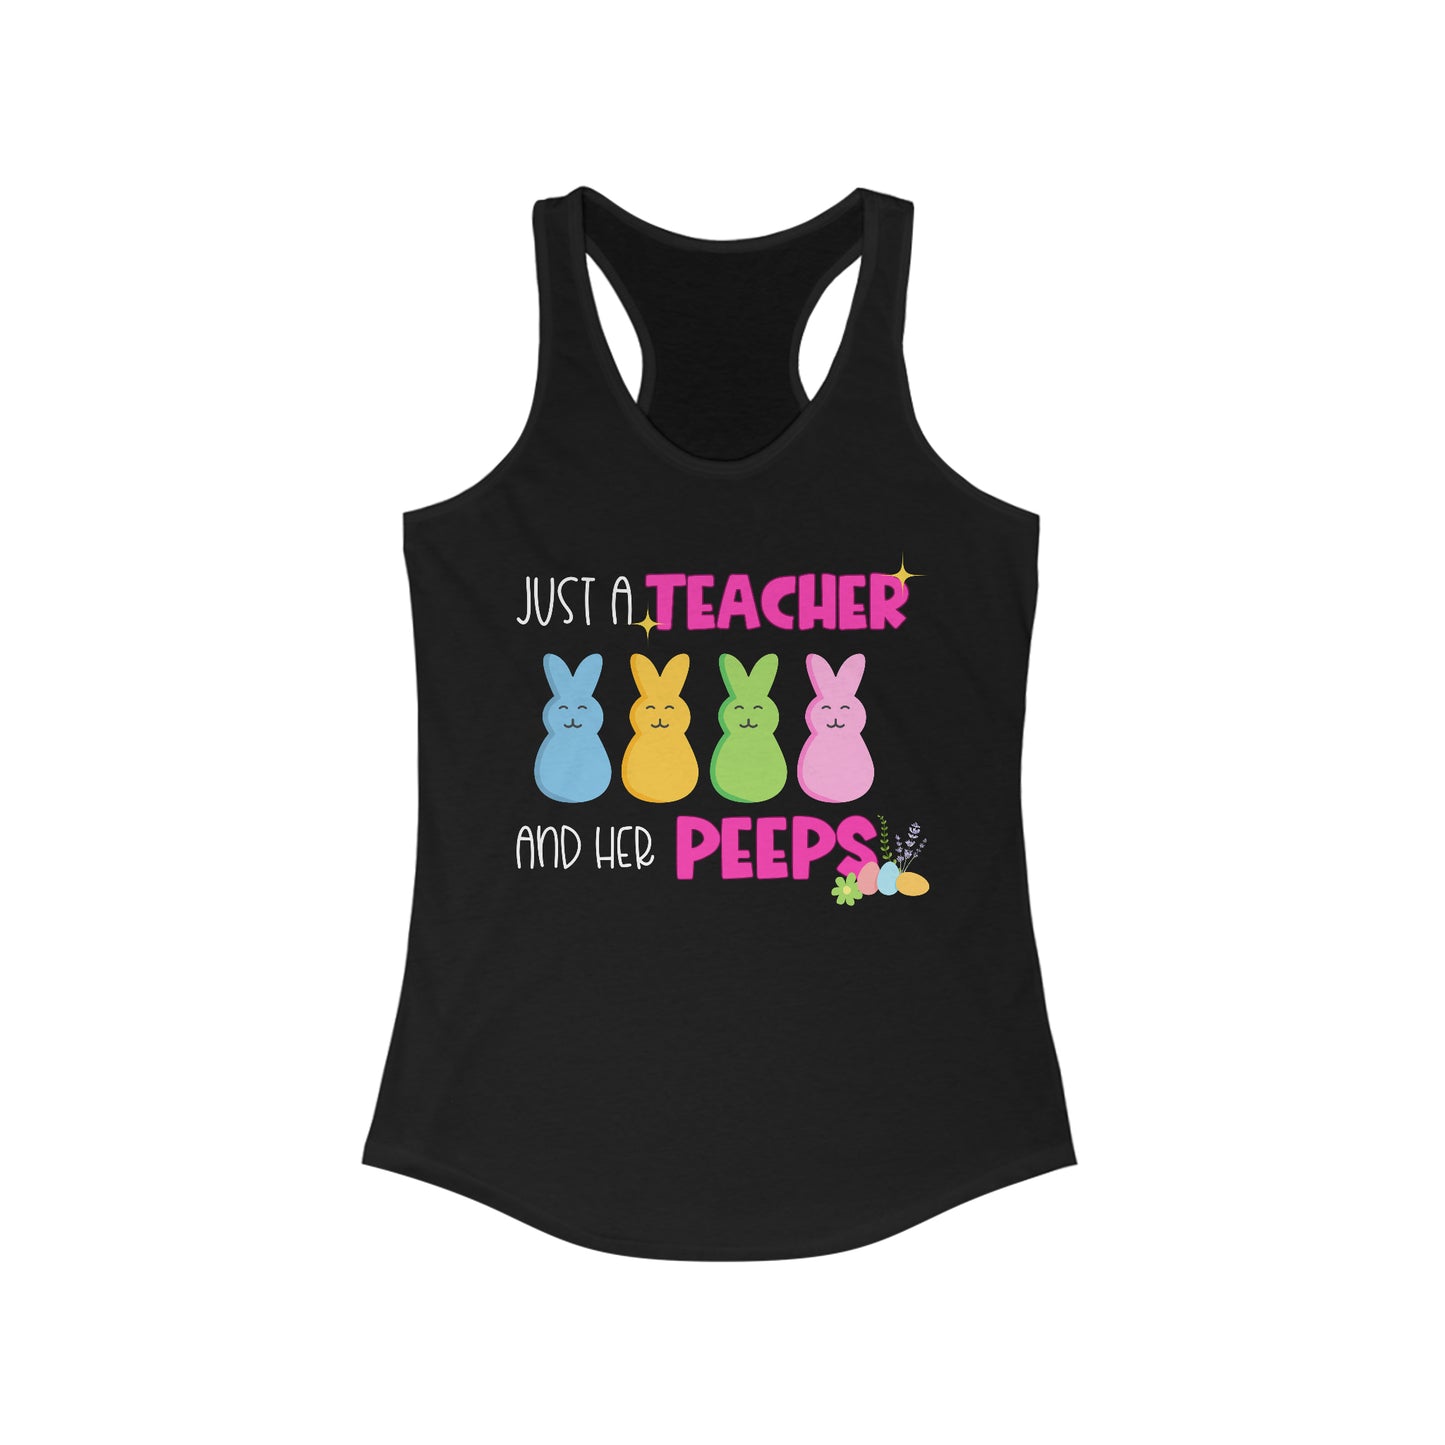 Just a Teacher and Her Peeps - Women's Ideal Racerback Tank